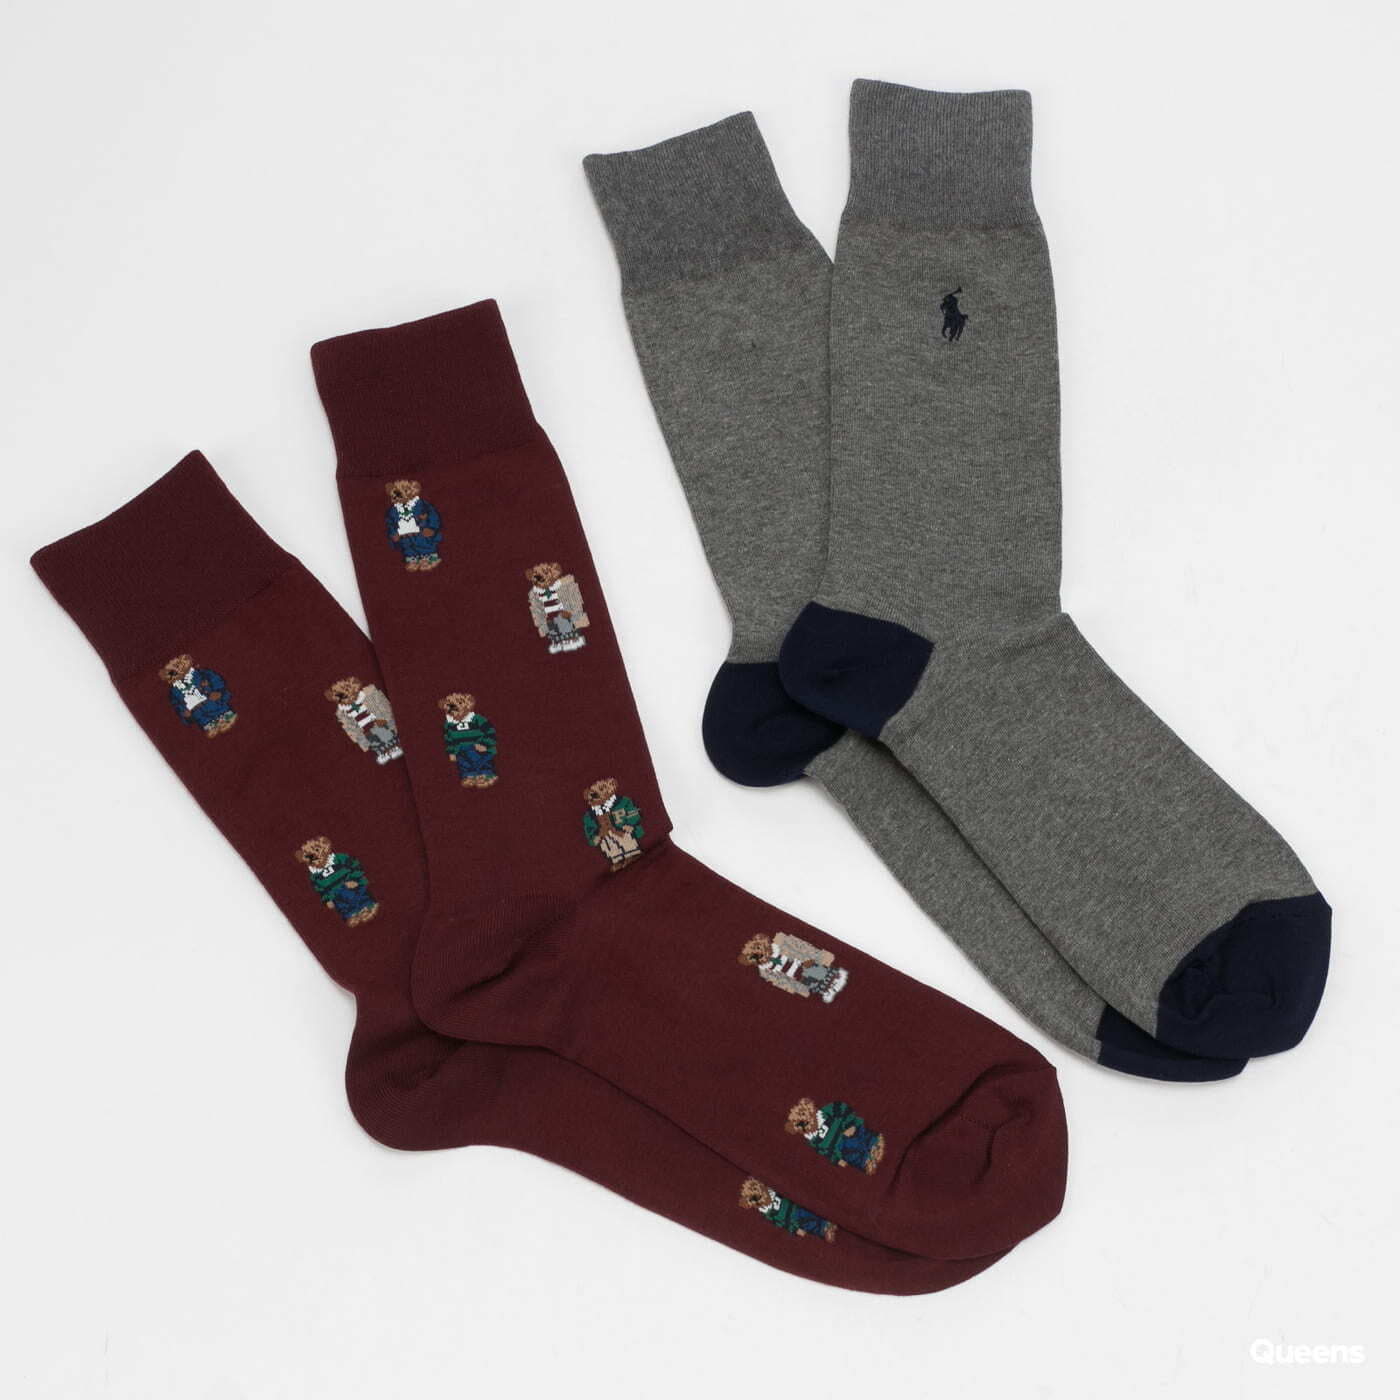 Socks Polo Ralph Lauren 2Pack Bear Quad Crew Wine/ Melange Dark Grey/ Navy